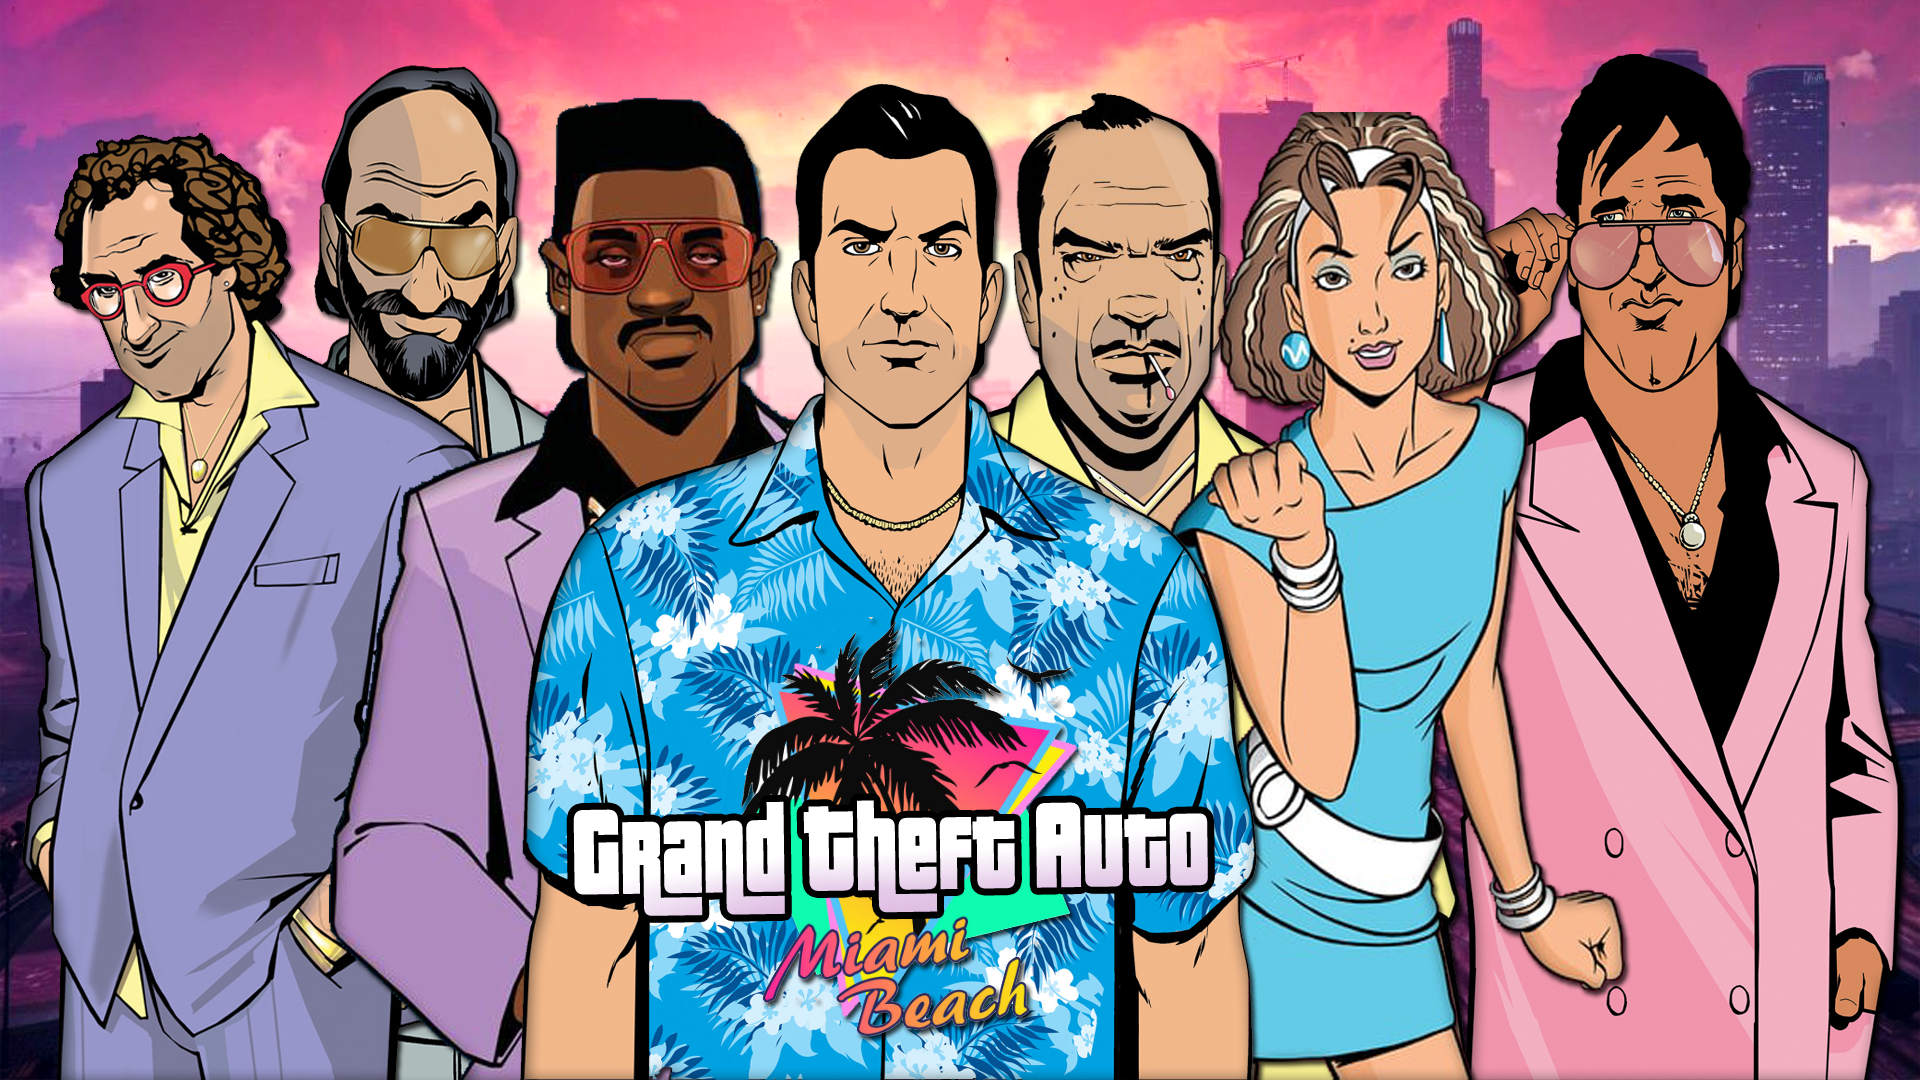 Gta vi. Grand Theft auto: vice City 2. Картина ГТА вай Сити. Стиль ГТА Вайс Сити. Вечеринка в стиле ГТА Вайс Сити.